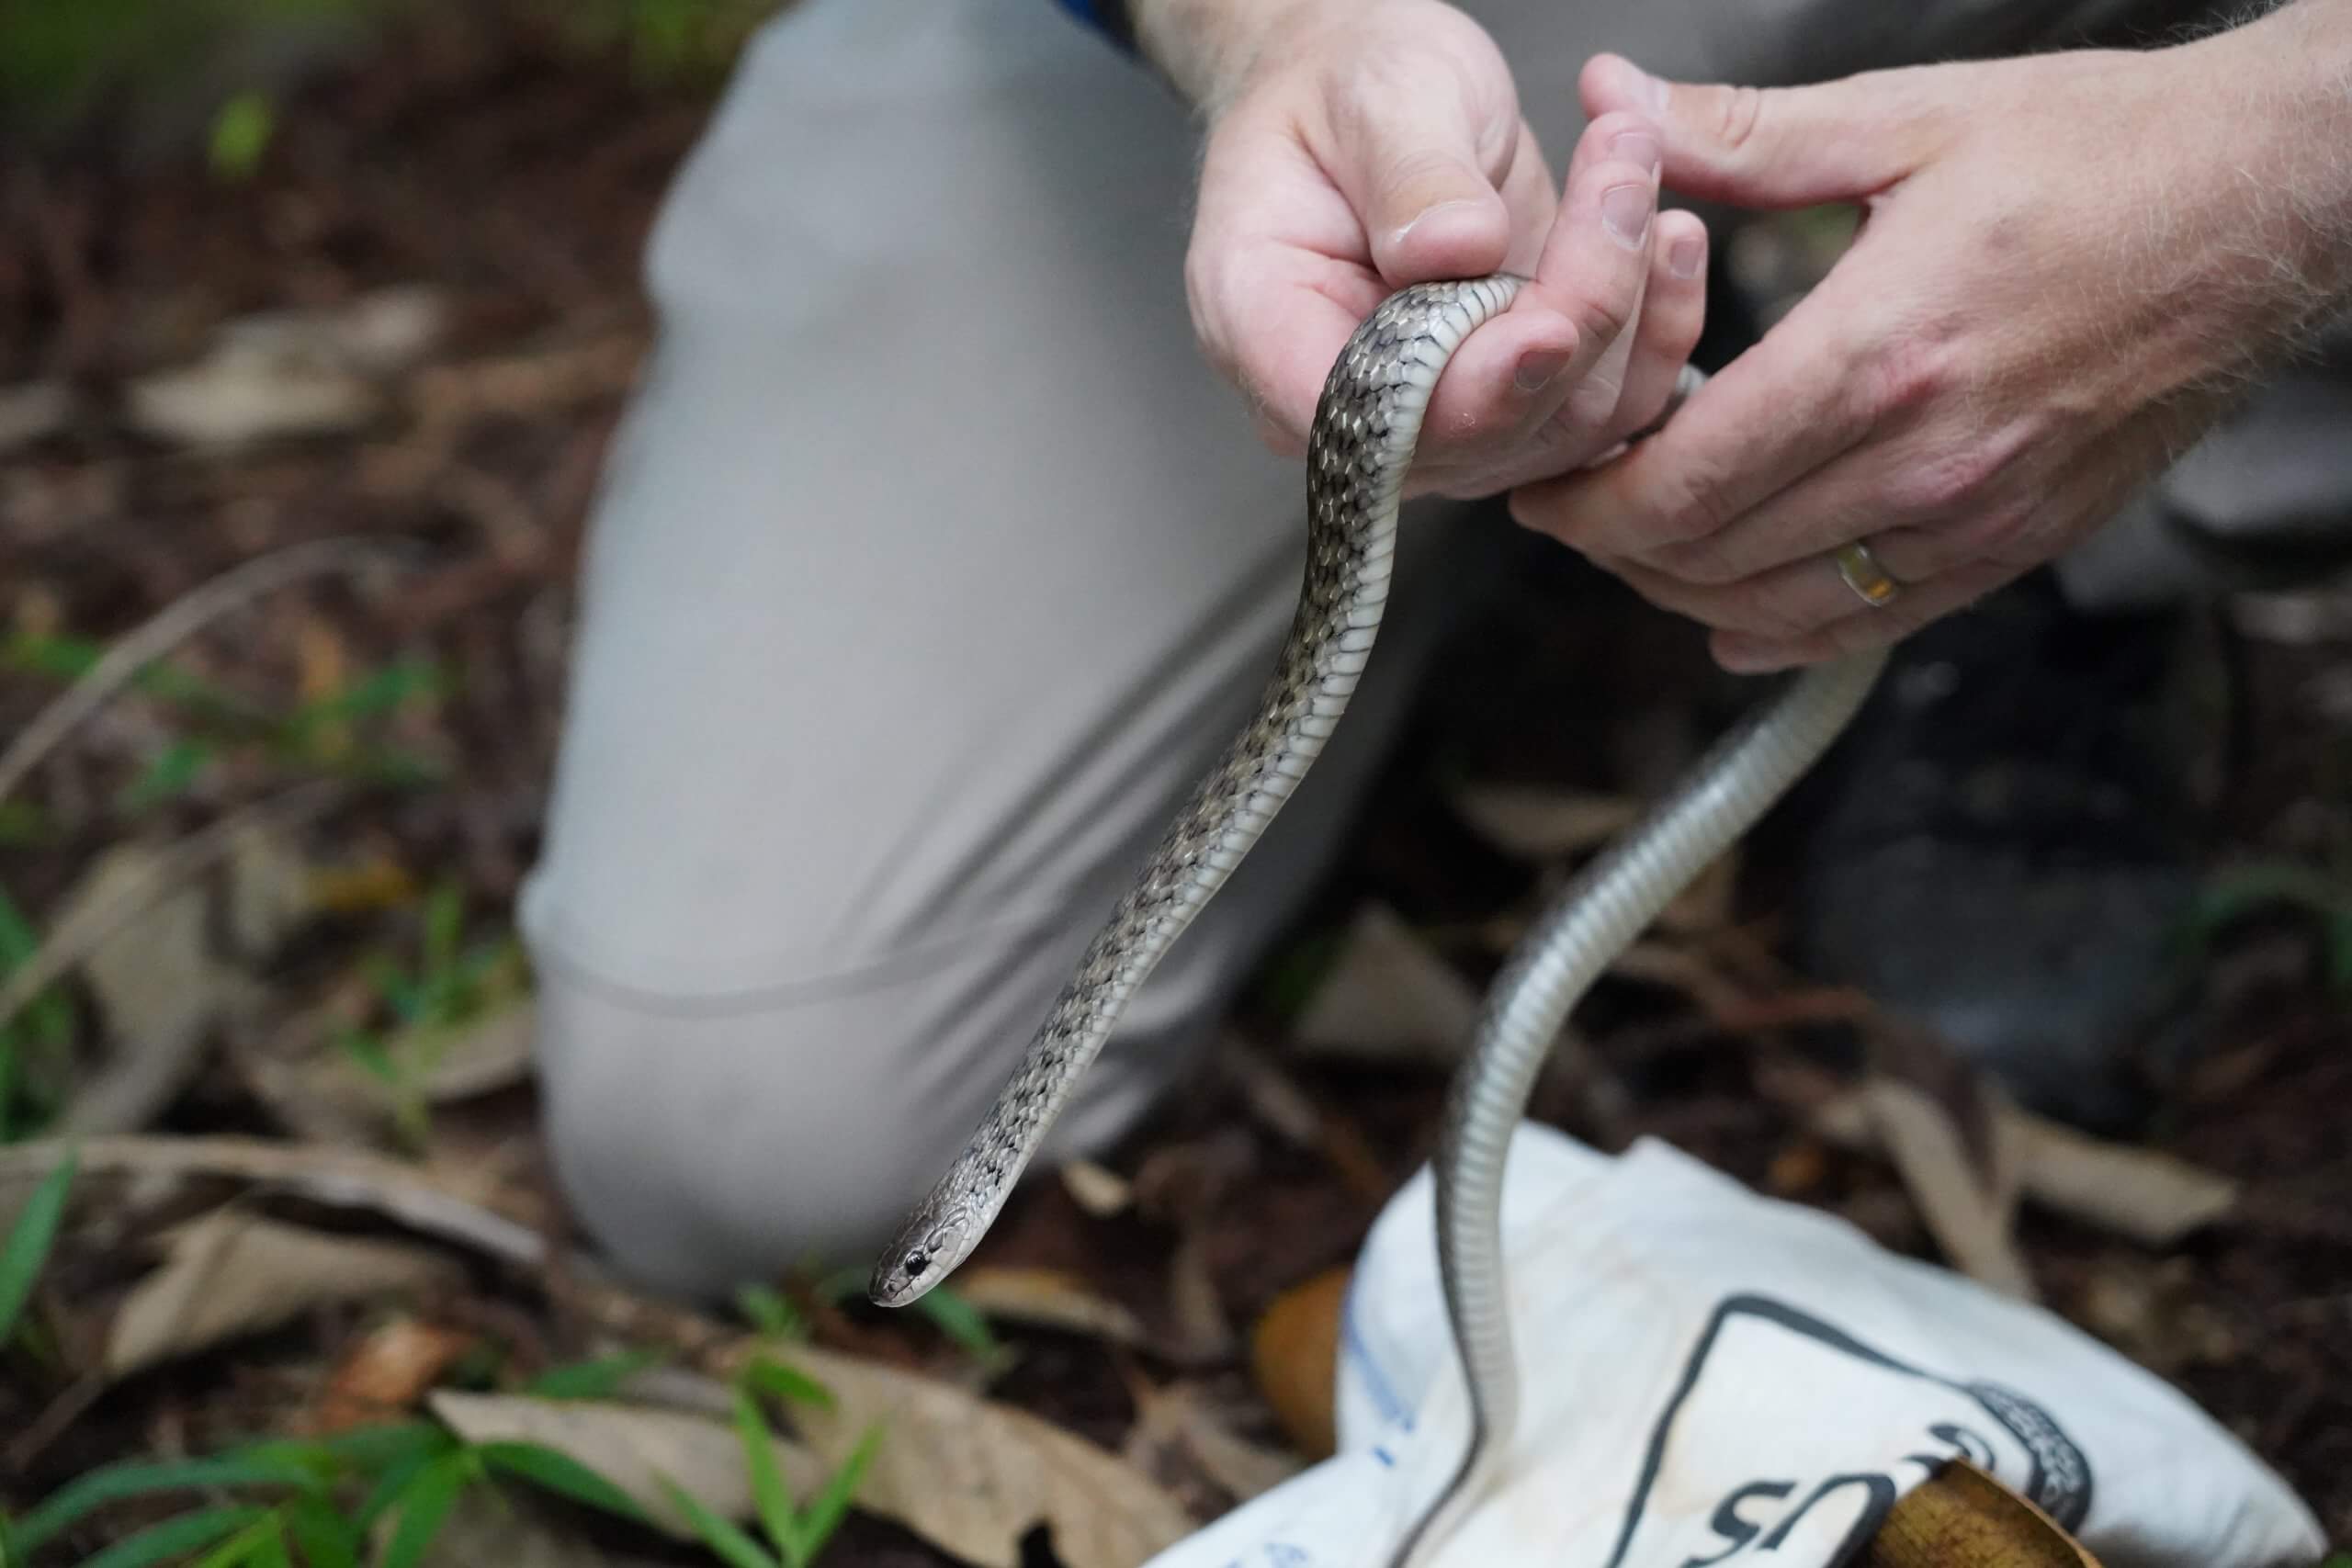 Keelback Snake being held